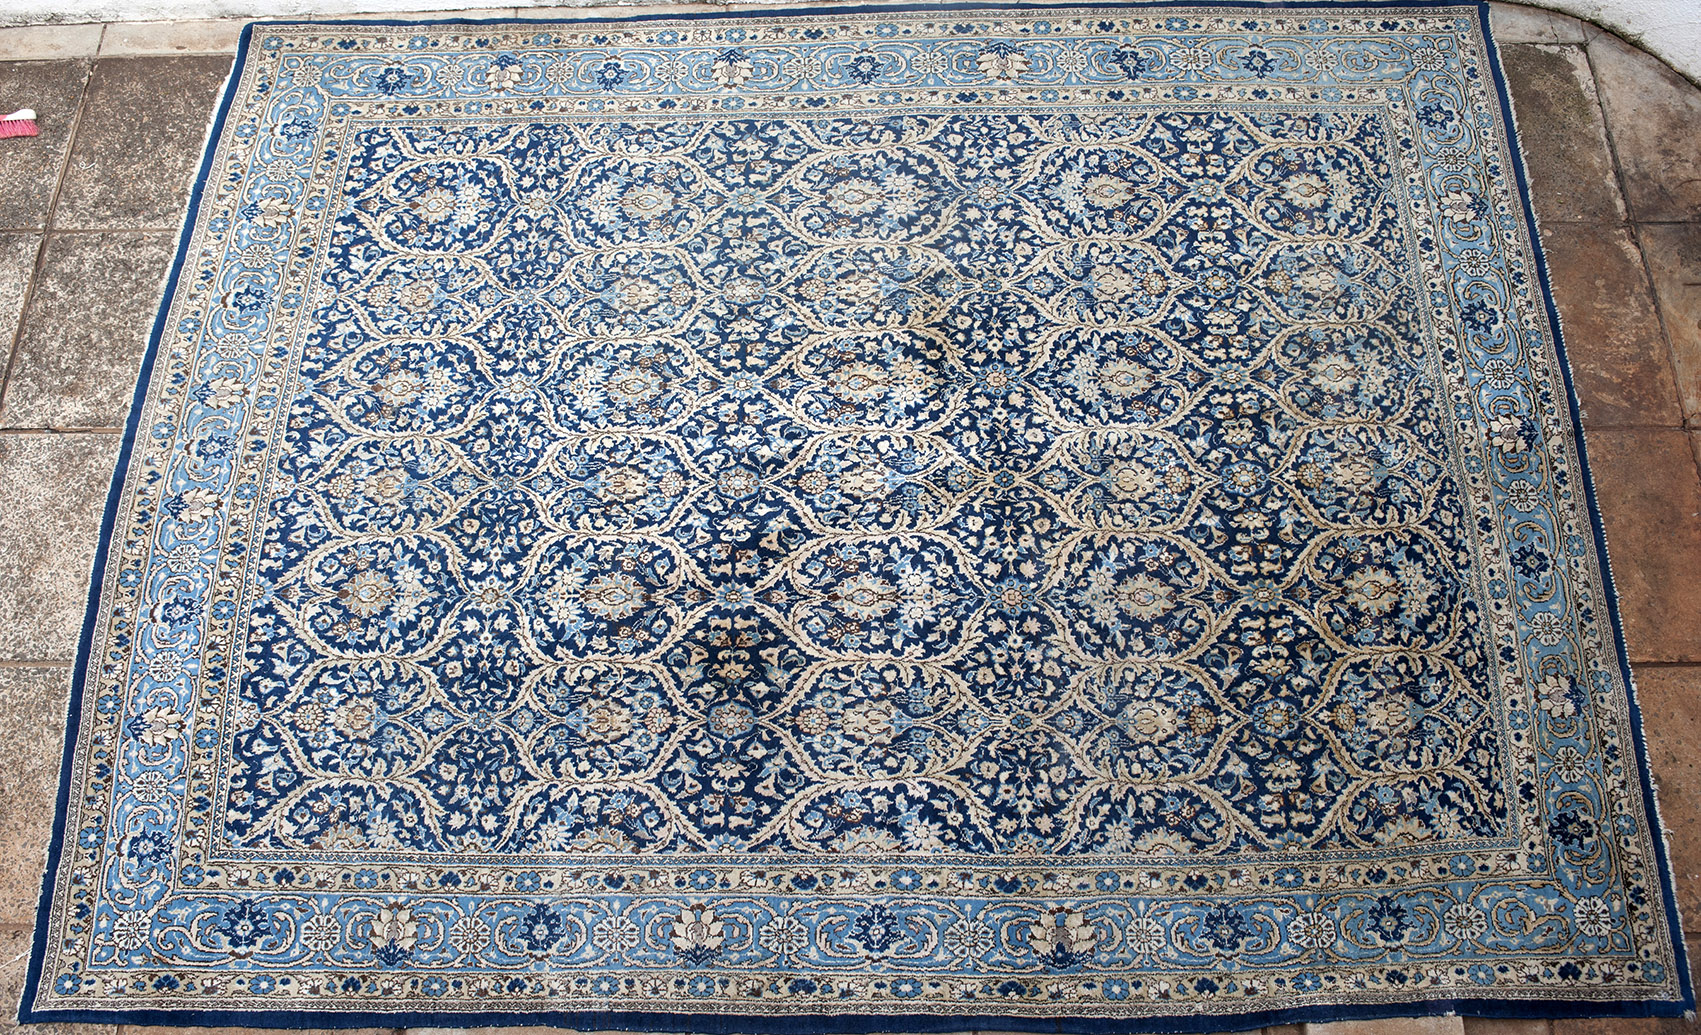 790. a disarming old Qum Persian rug | www.bagface.co.uk